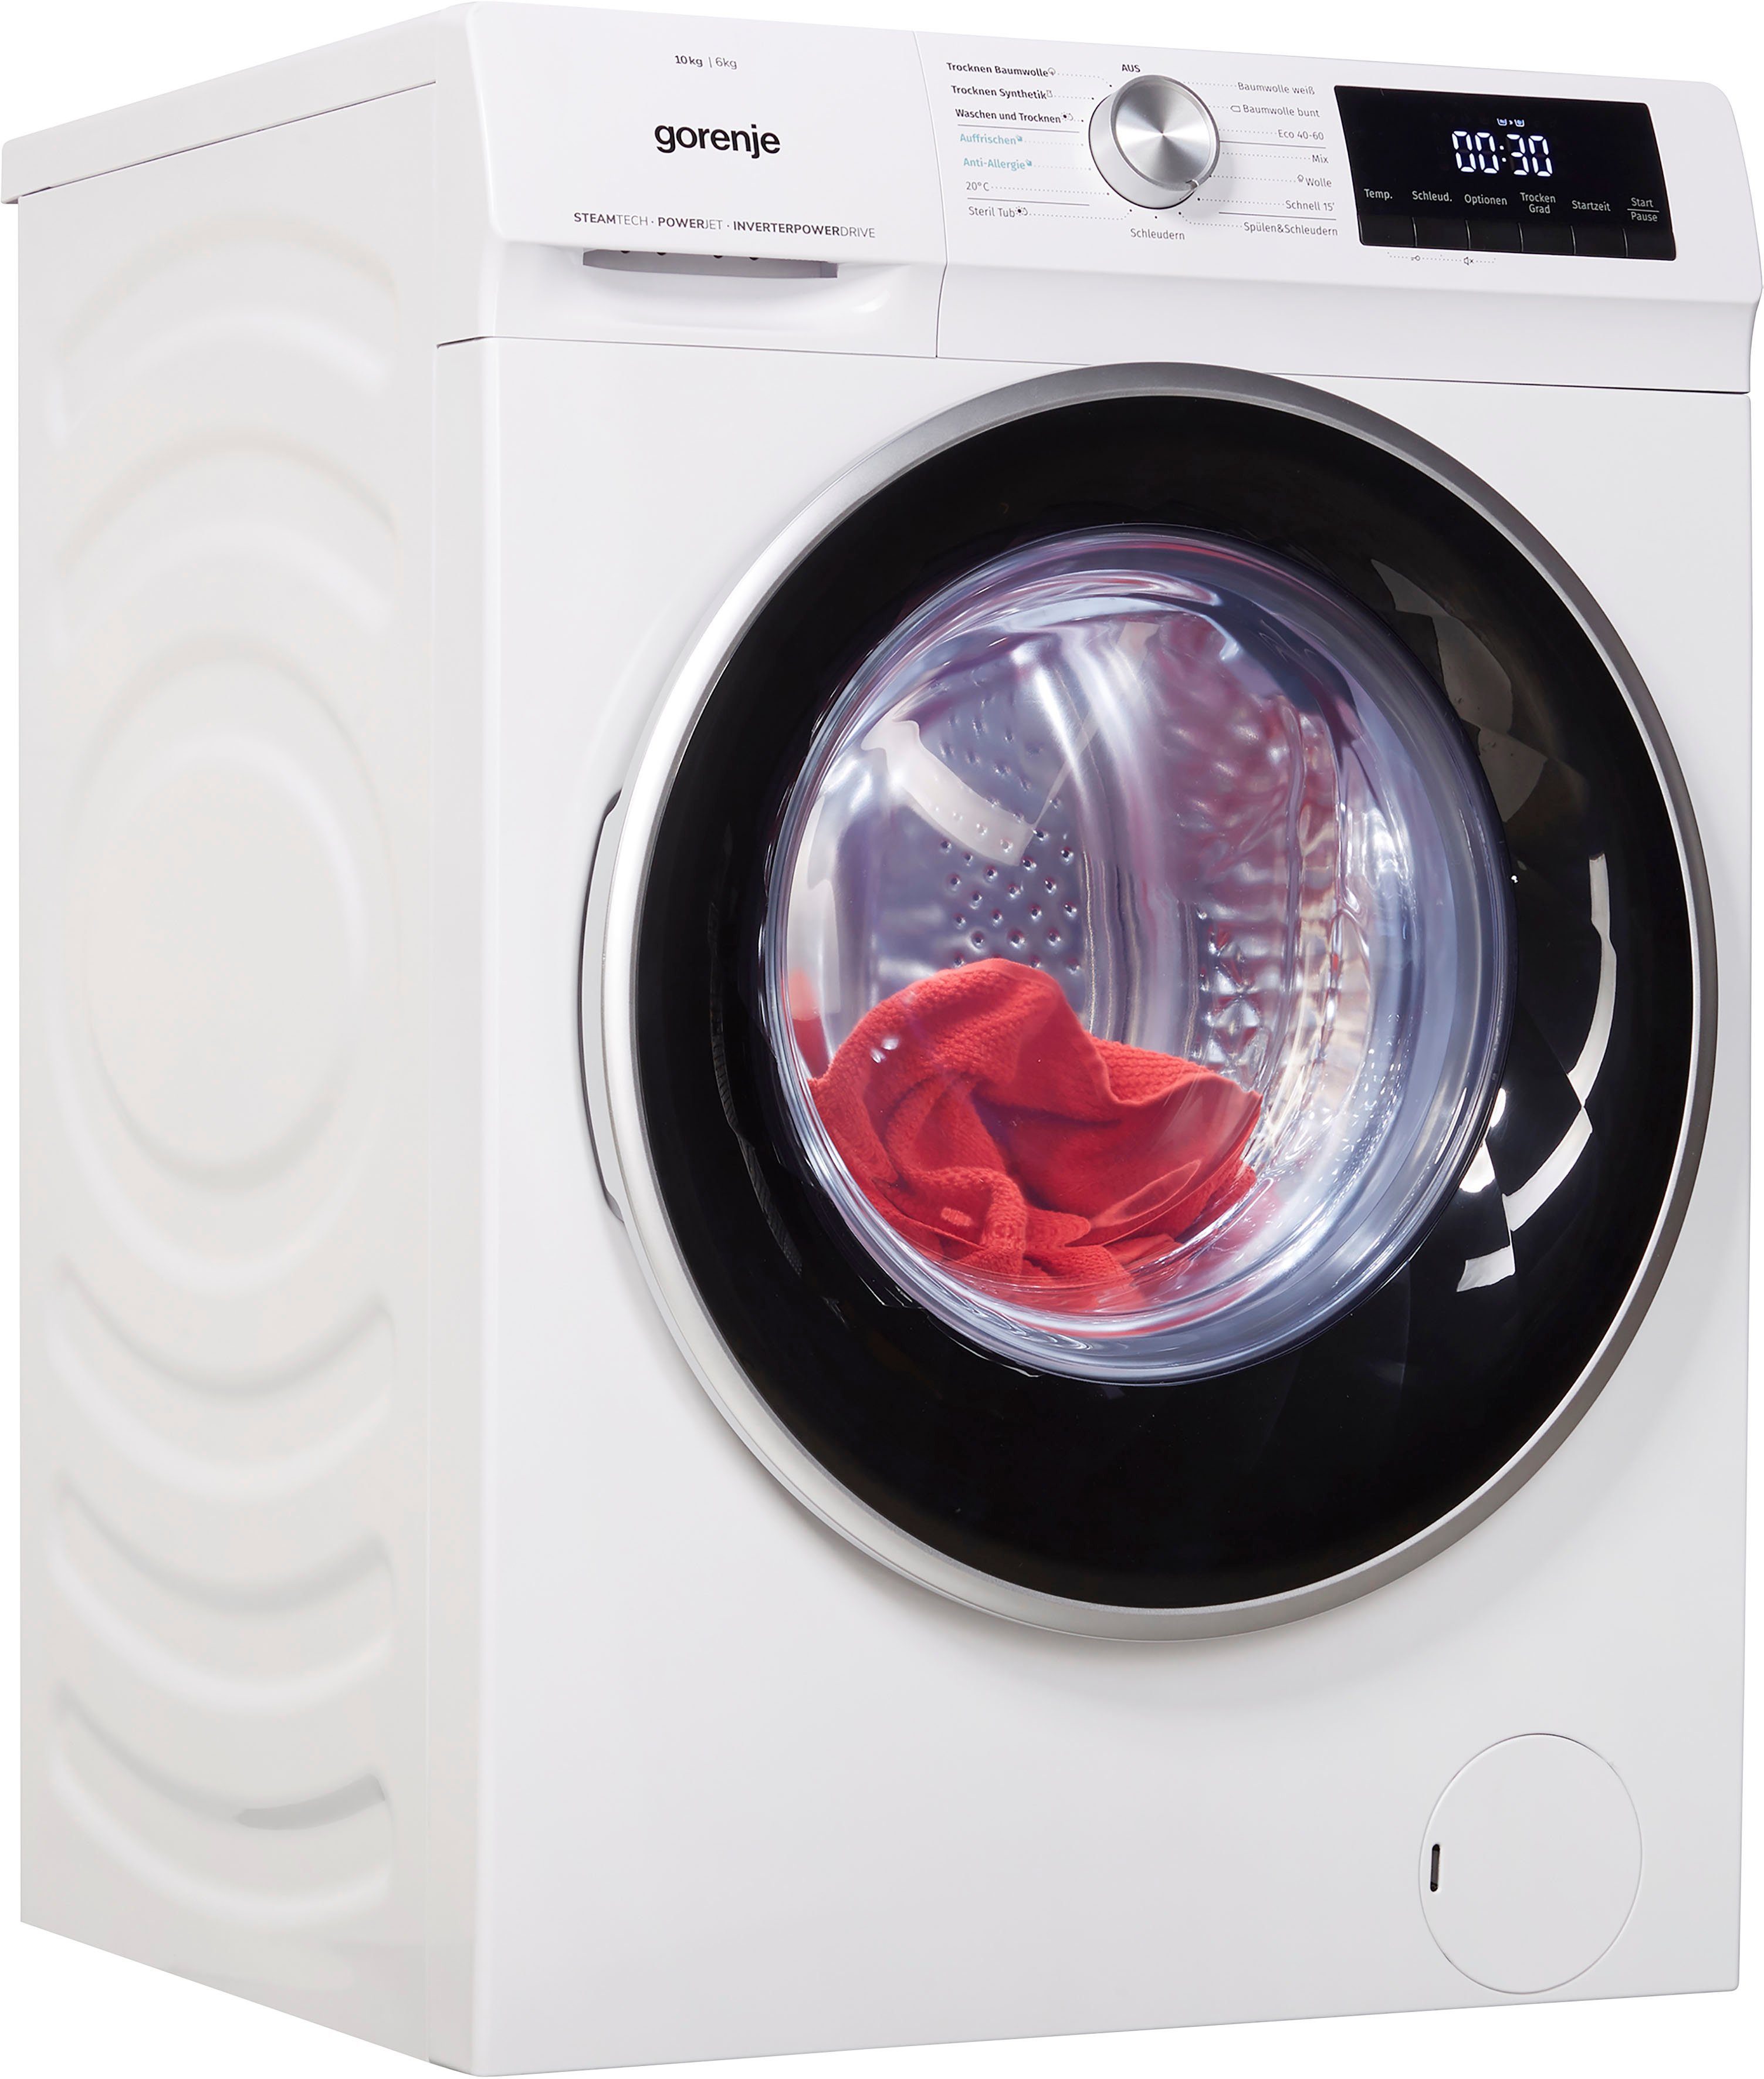 Waschtrockner online kaufen » Altgeräte-Mitnahme | OTTO